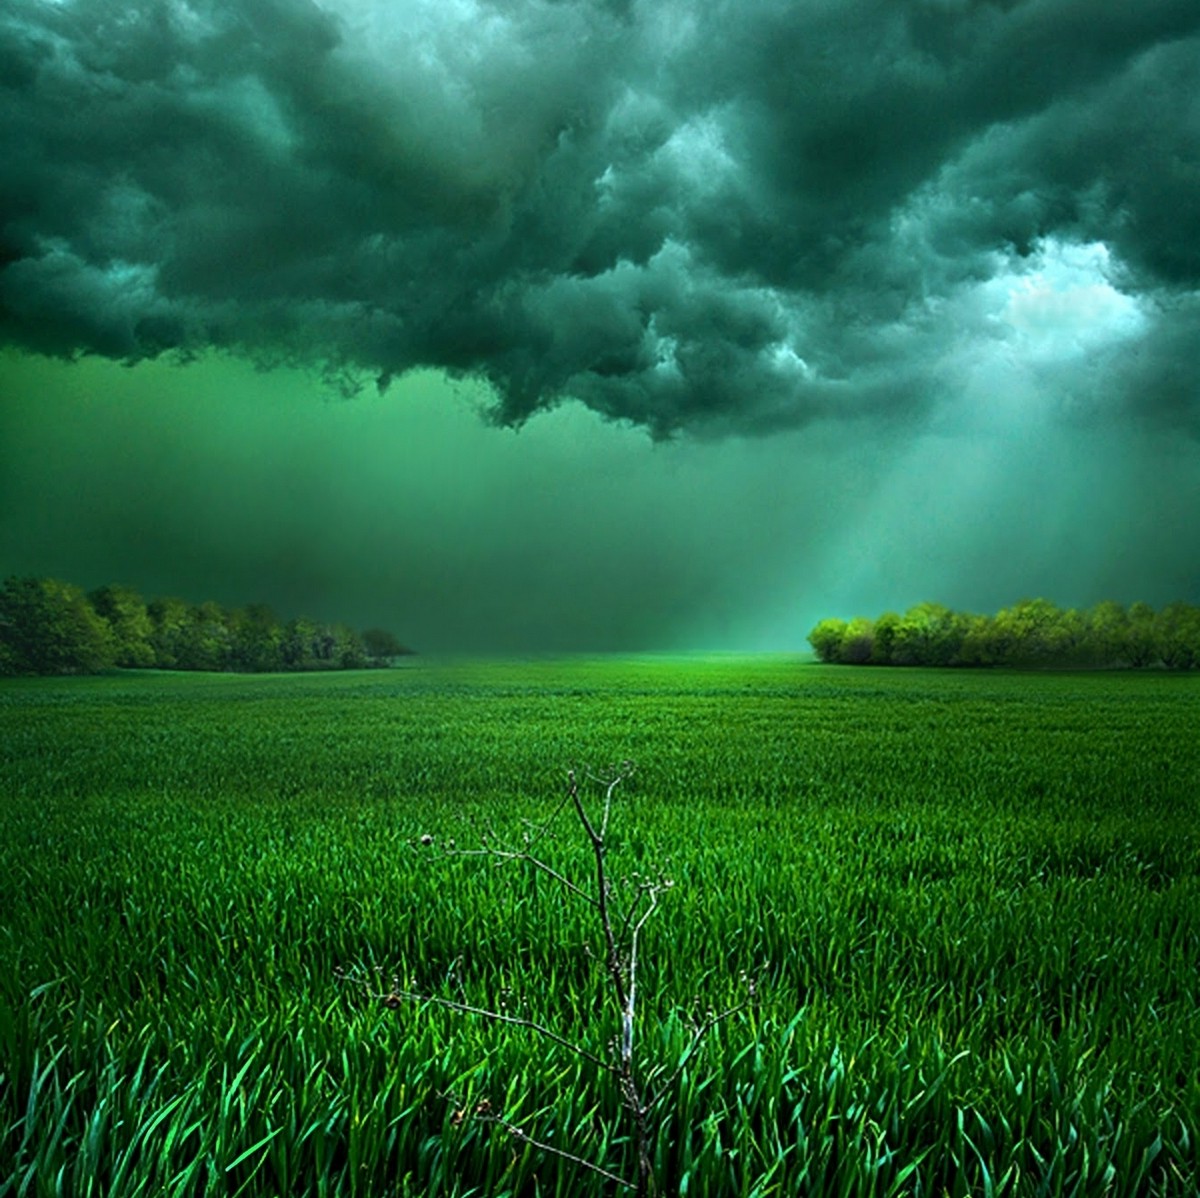 clouds, Field, Sunlight, Storm, Grass, Shrubs, Green, Landscape, Nature Wallpaper